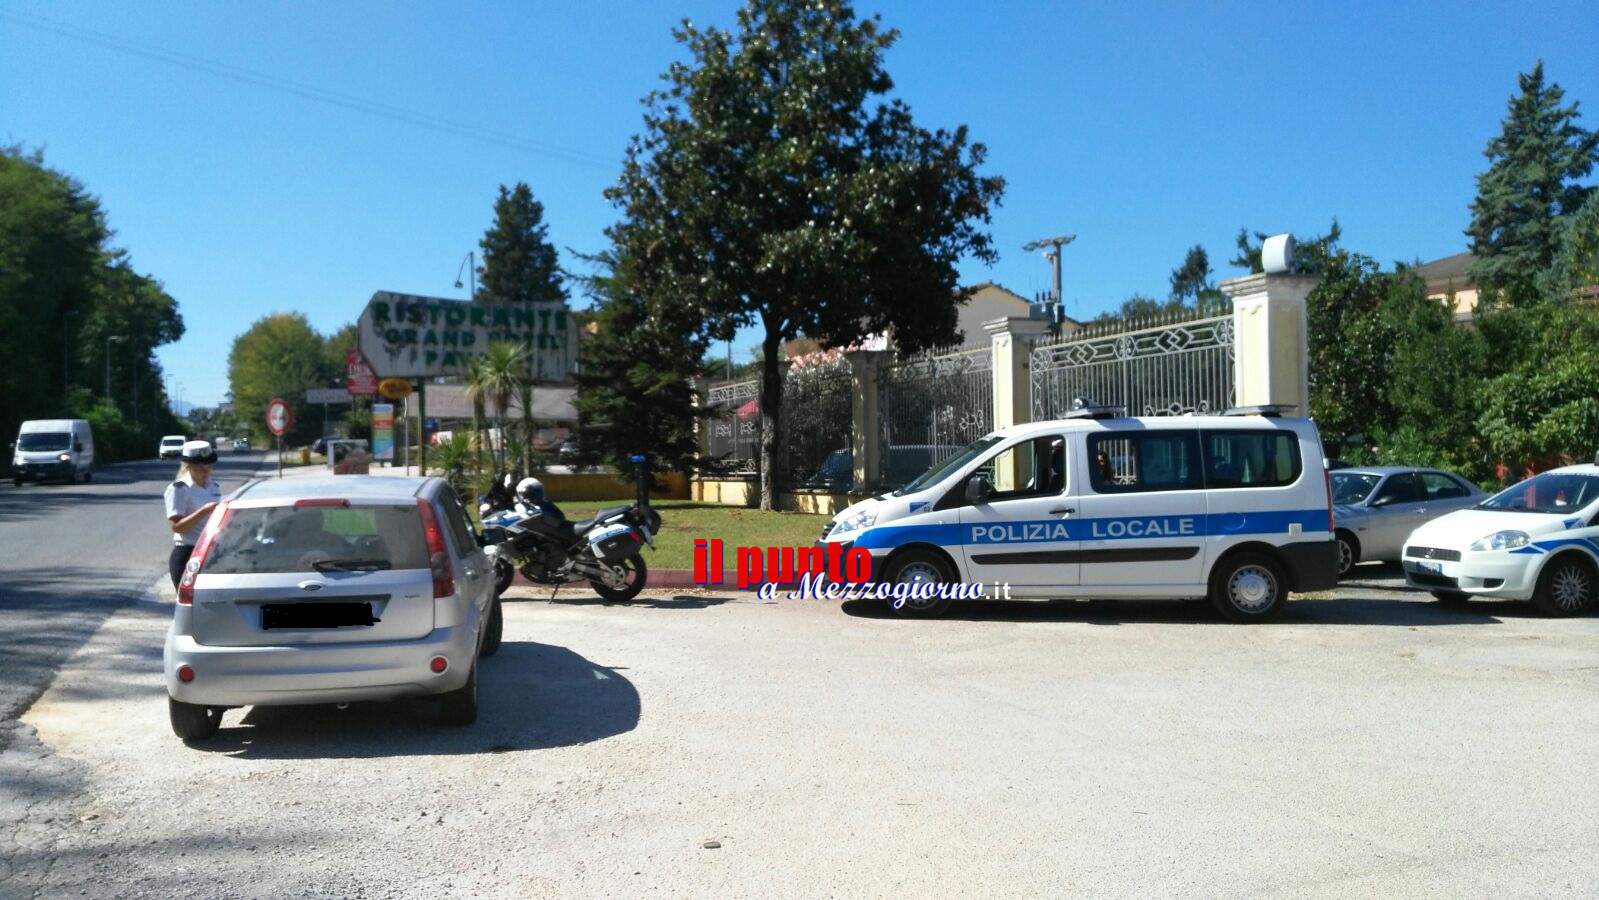 Targa System: La Polizia locale di Cassino sanziona 13 veicoli privi di revisione